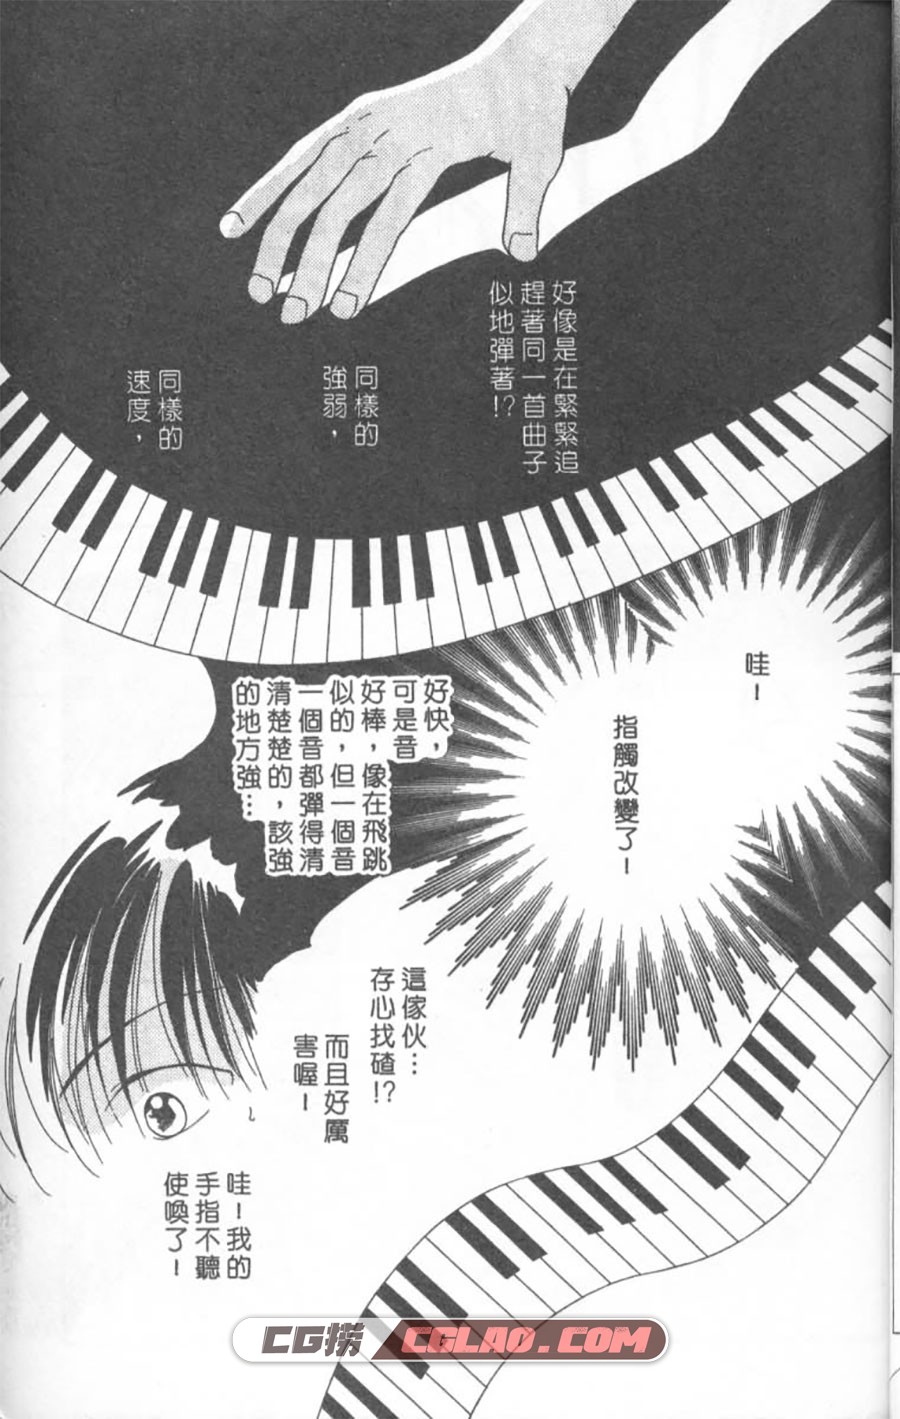 钢琴恋人 喜多尚江 1-2卷 漫画已完结全部下载 百度网盘,Piano01-005.jpg